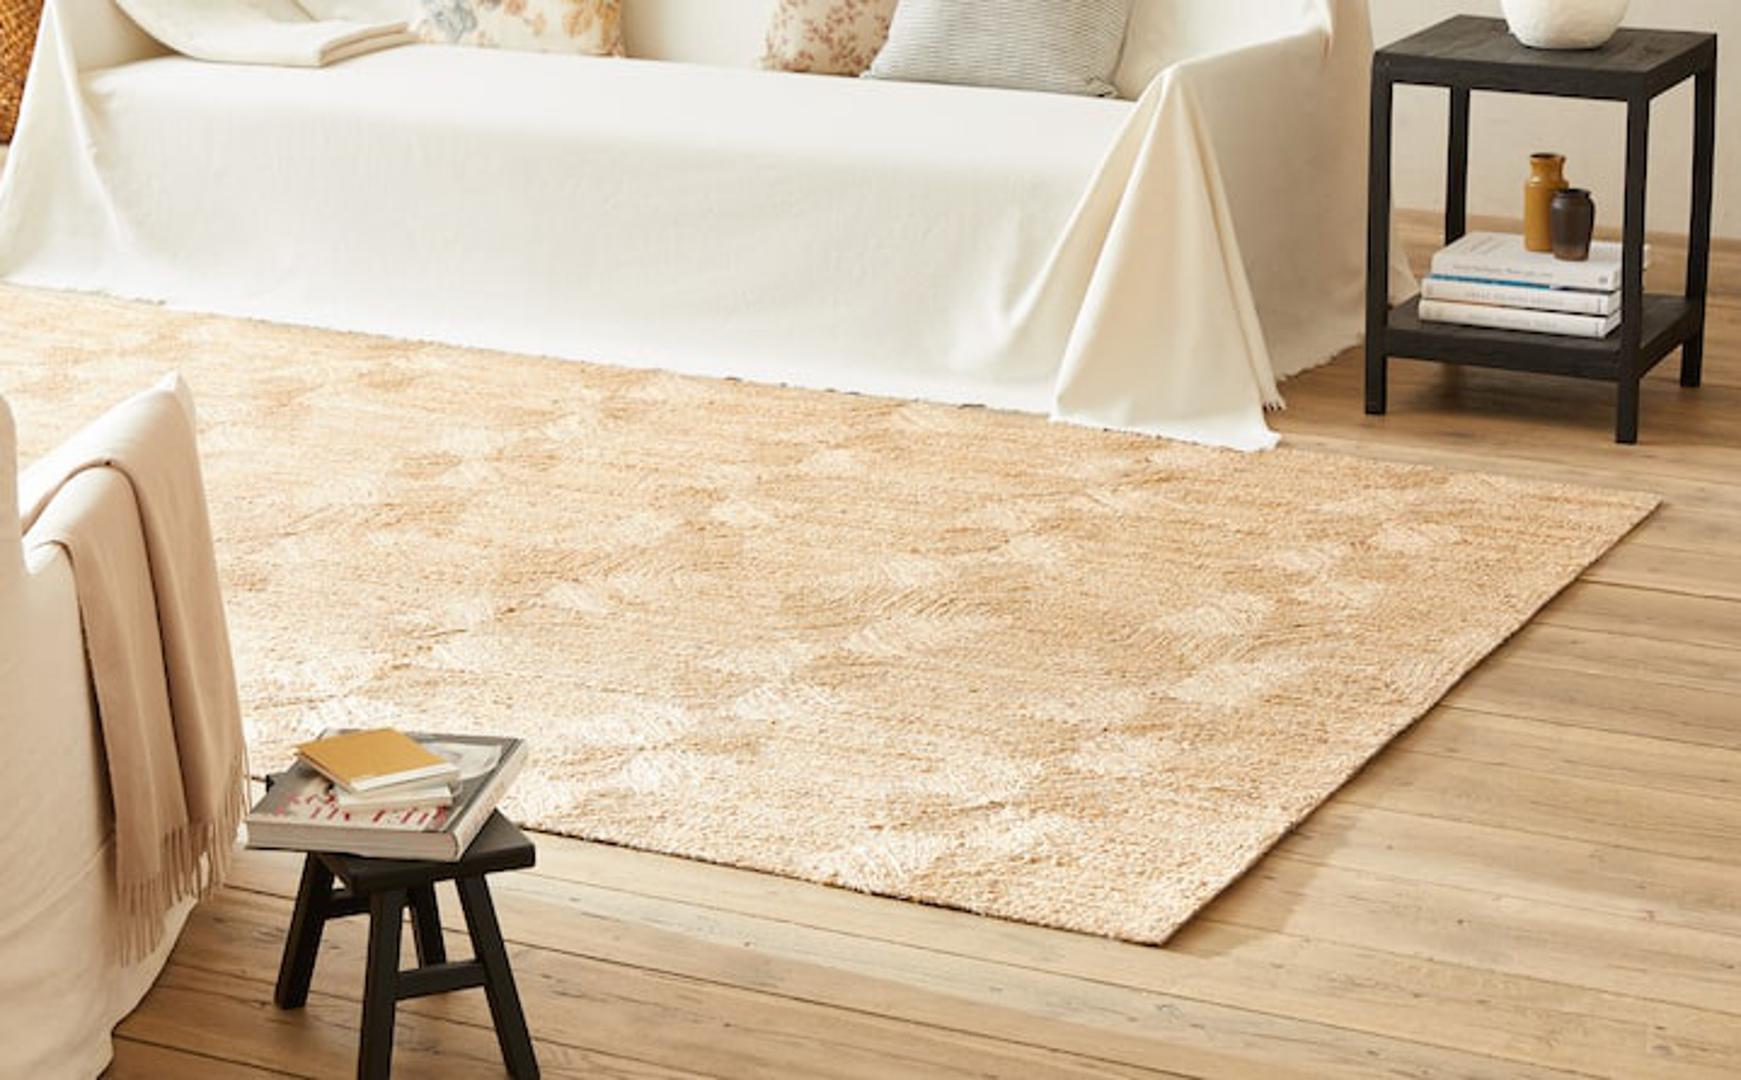 Elegantni tepih u kombinaciji jute i lana sjajan je izbor za spavaću sobu, posebno ako puno hodate bosi